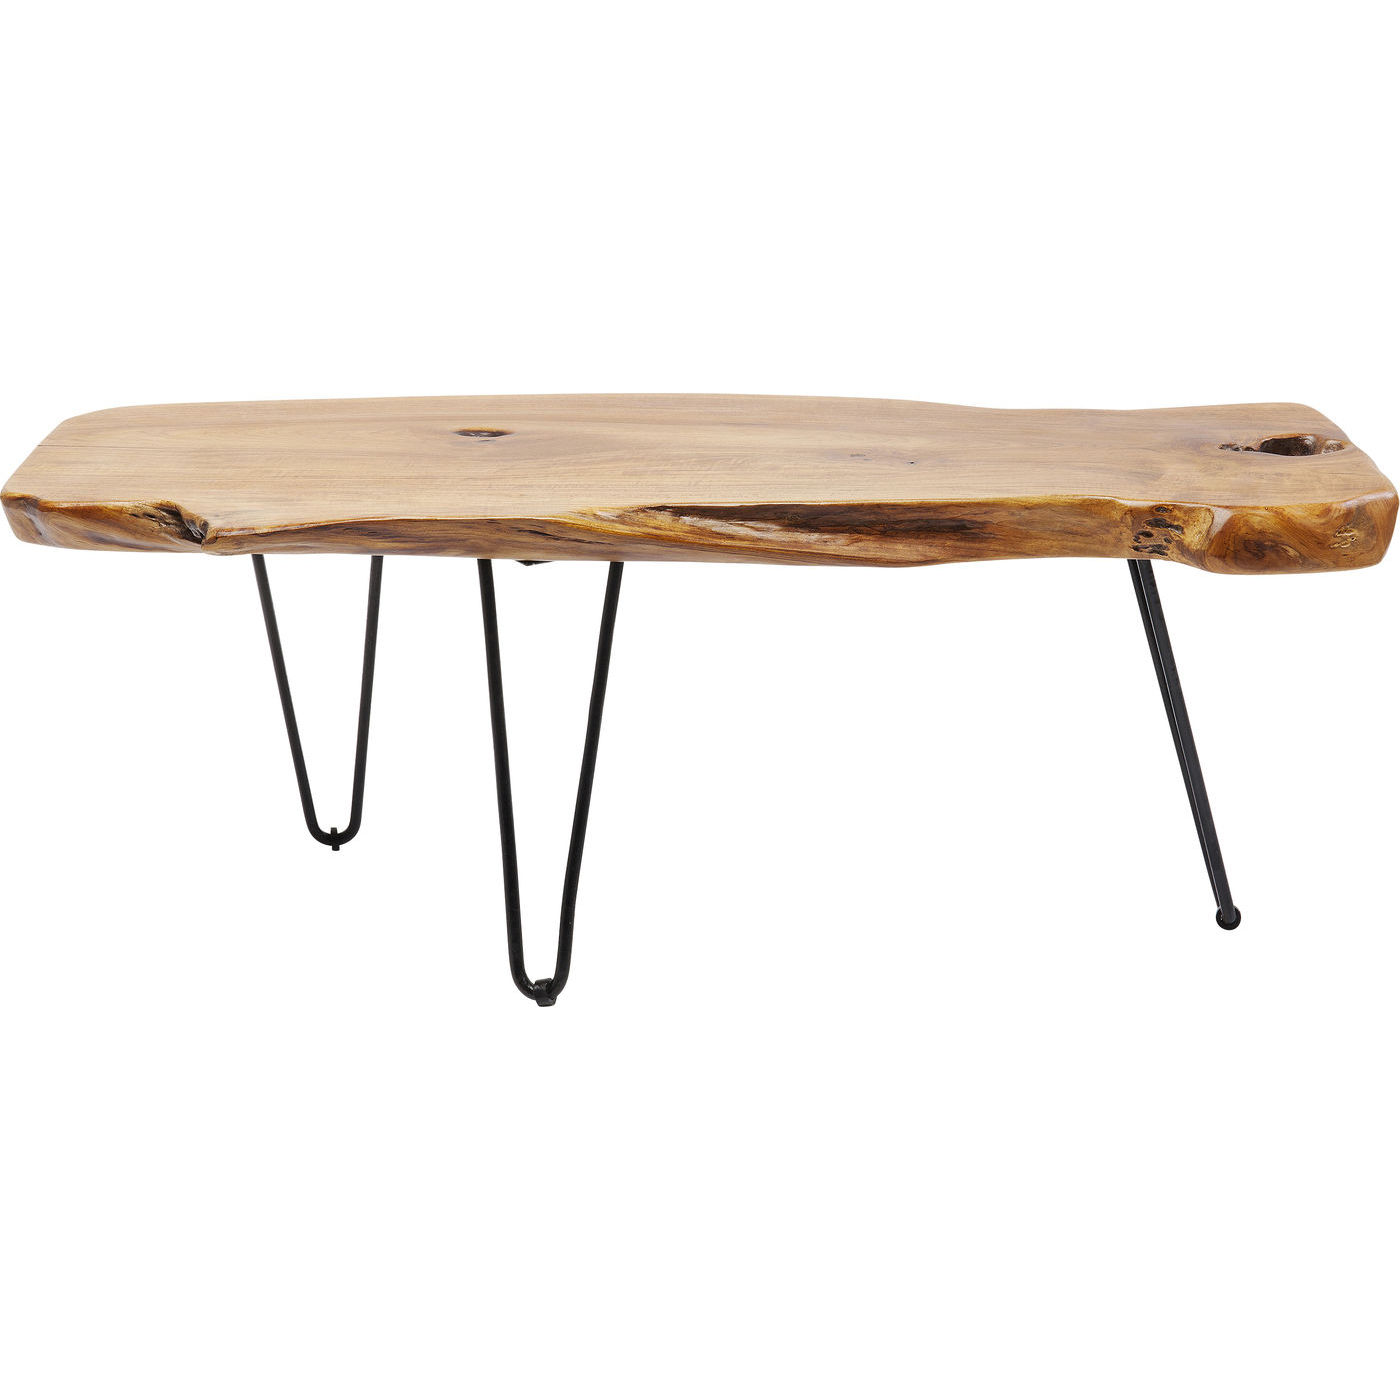 KARE DESIGN Aspen soffbord - naturlig teak / stål